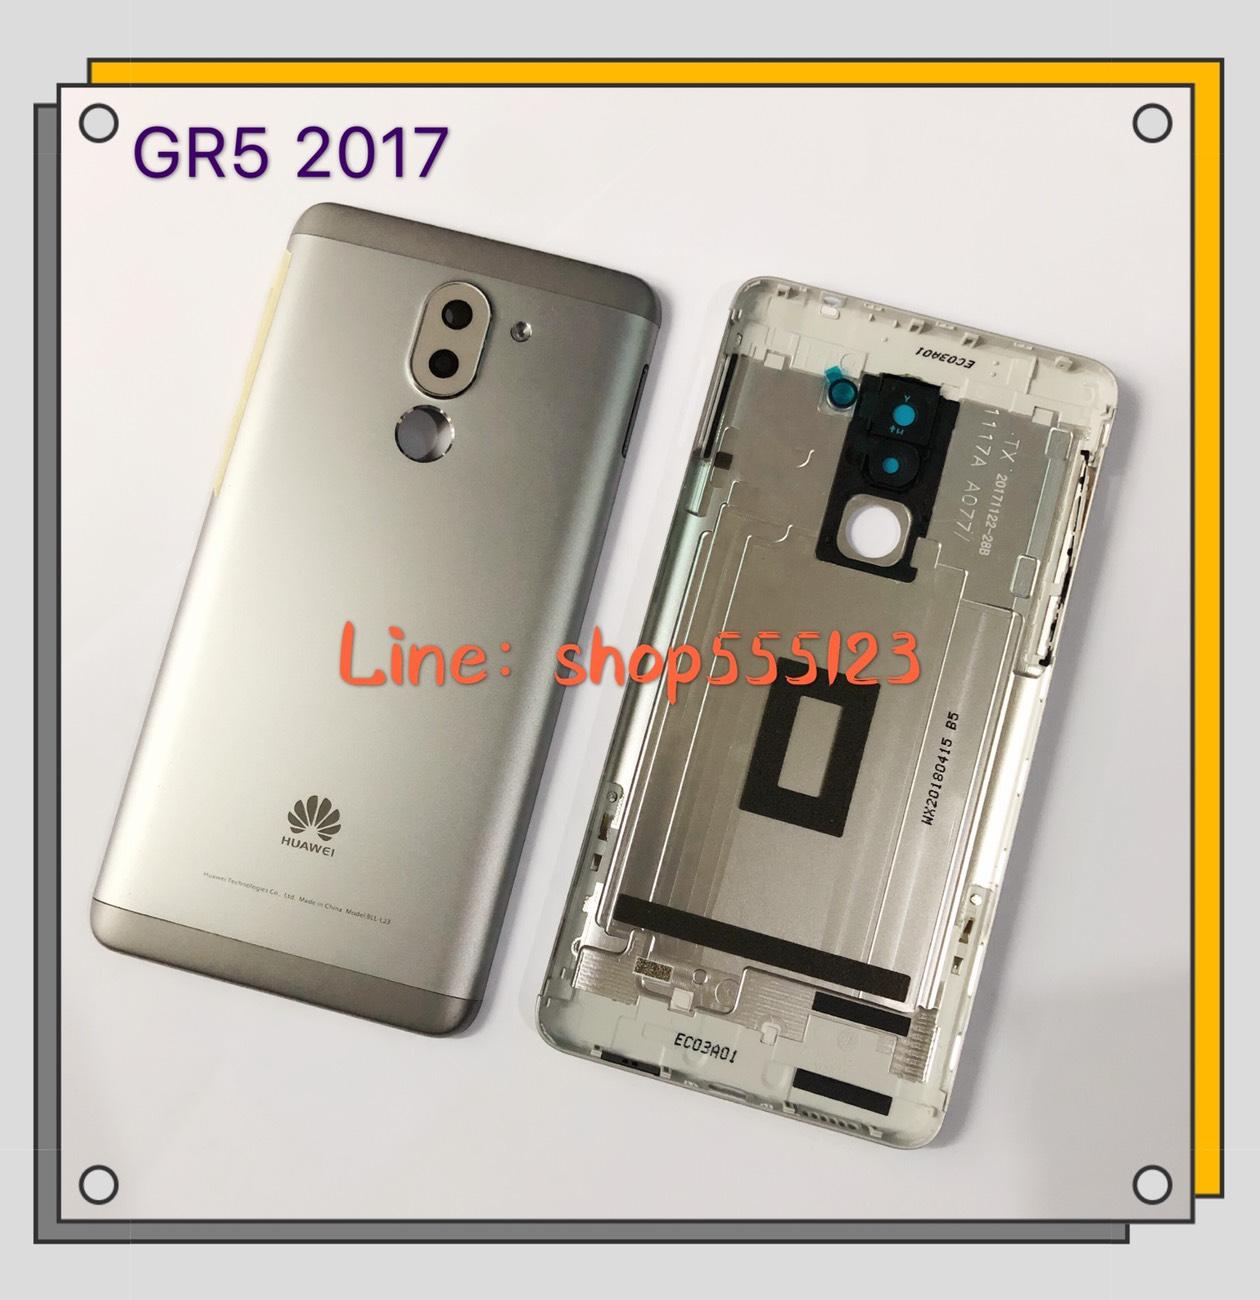 ฝาหลัง (Back Cover) Huawei GR5 2017 / KLL-L22